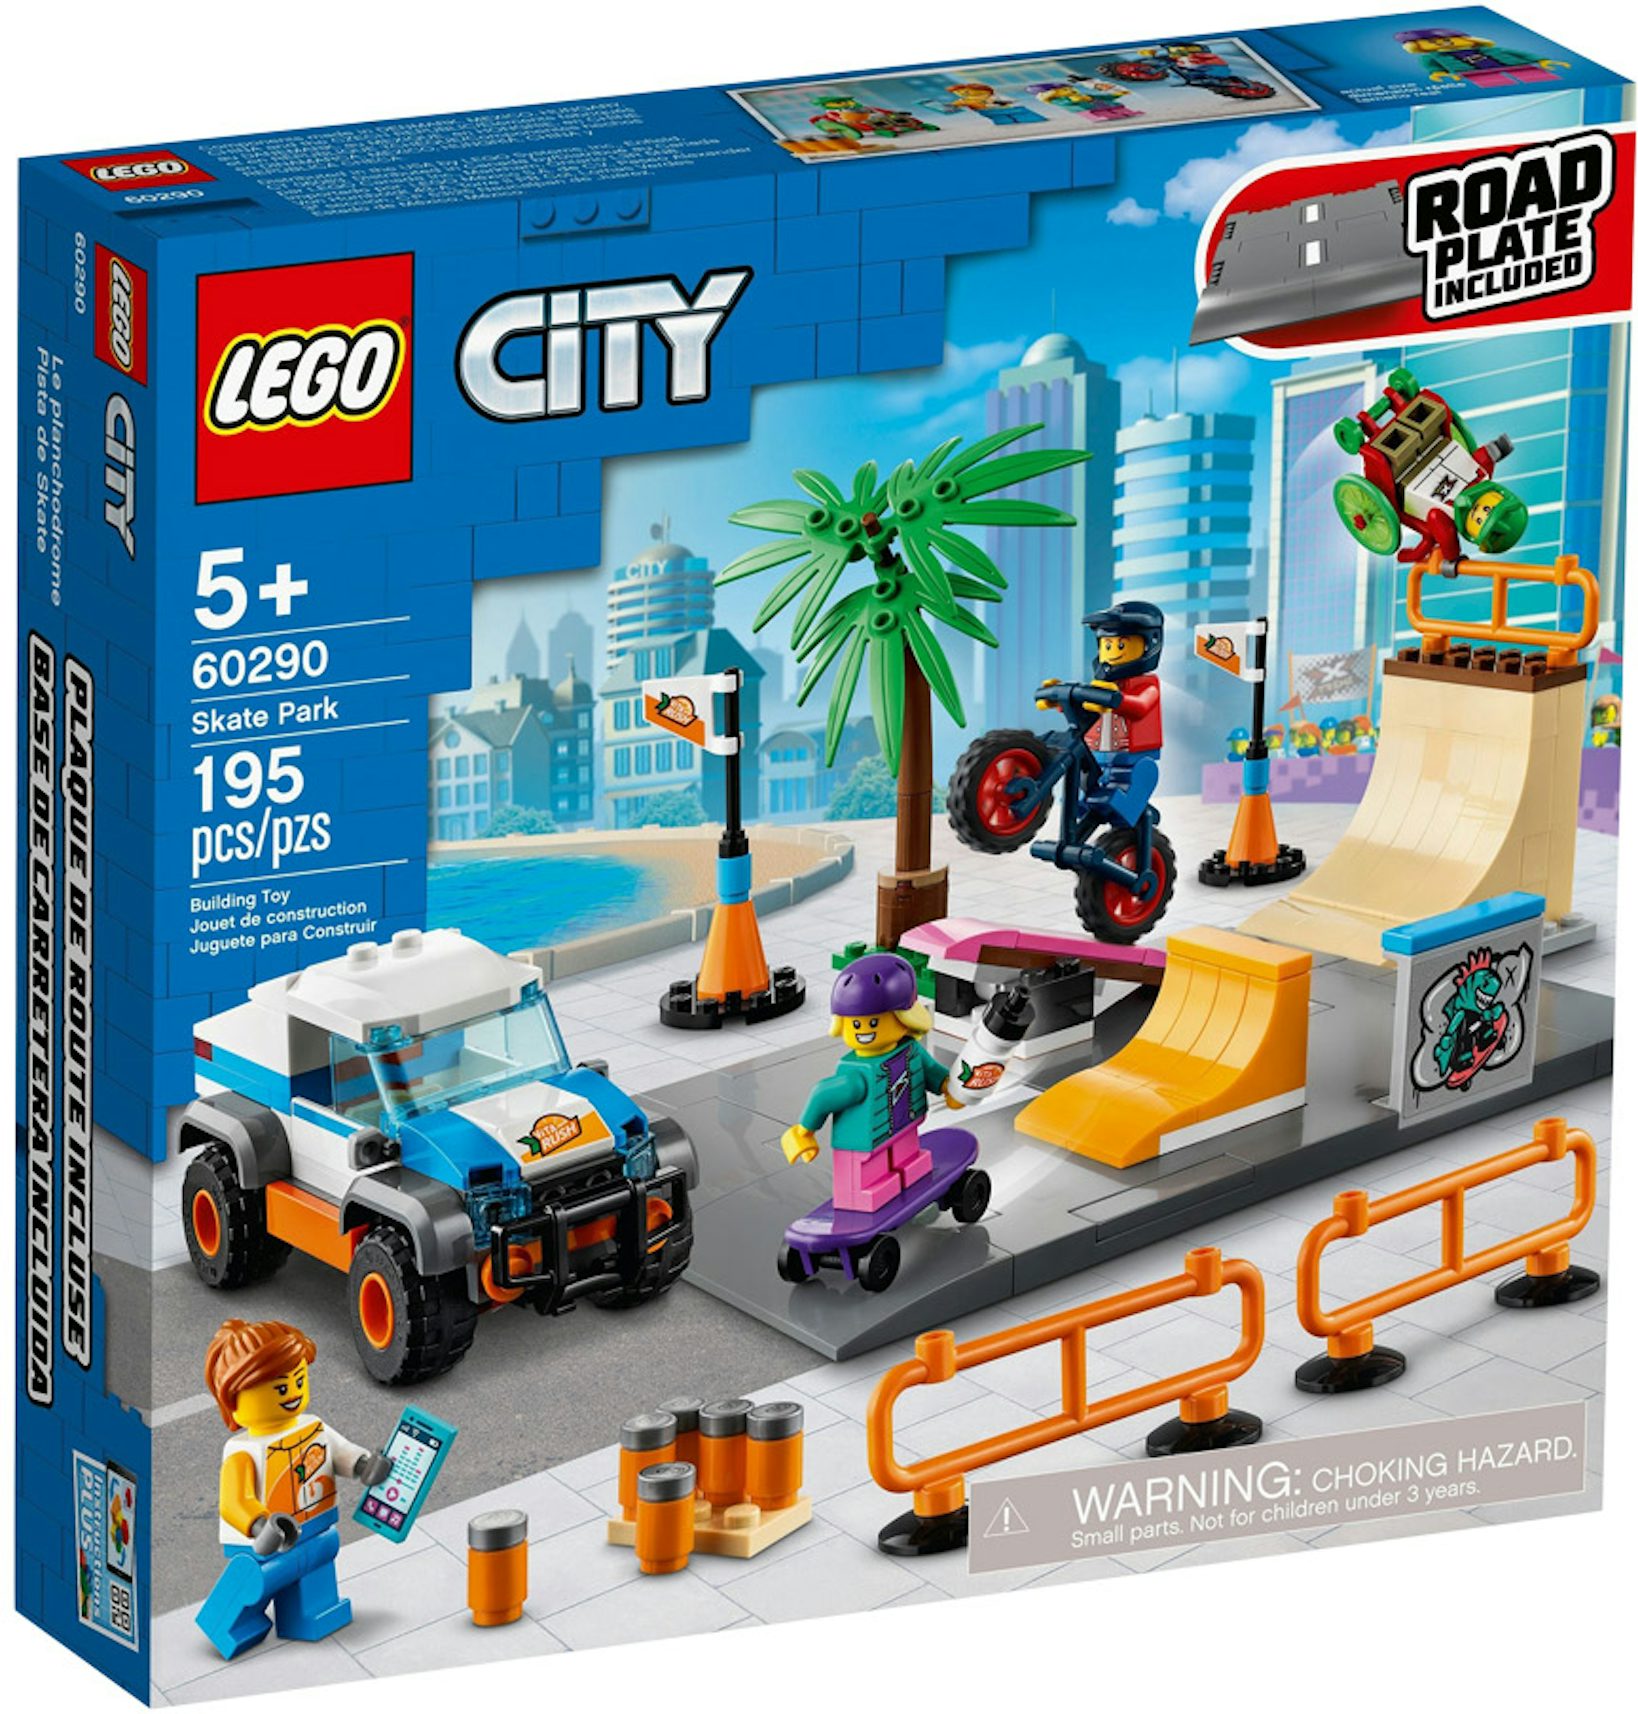 LEGO City Skate Park Set 60290